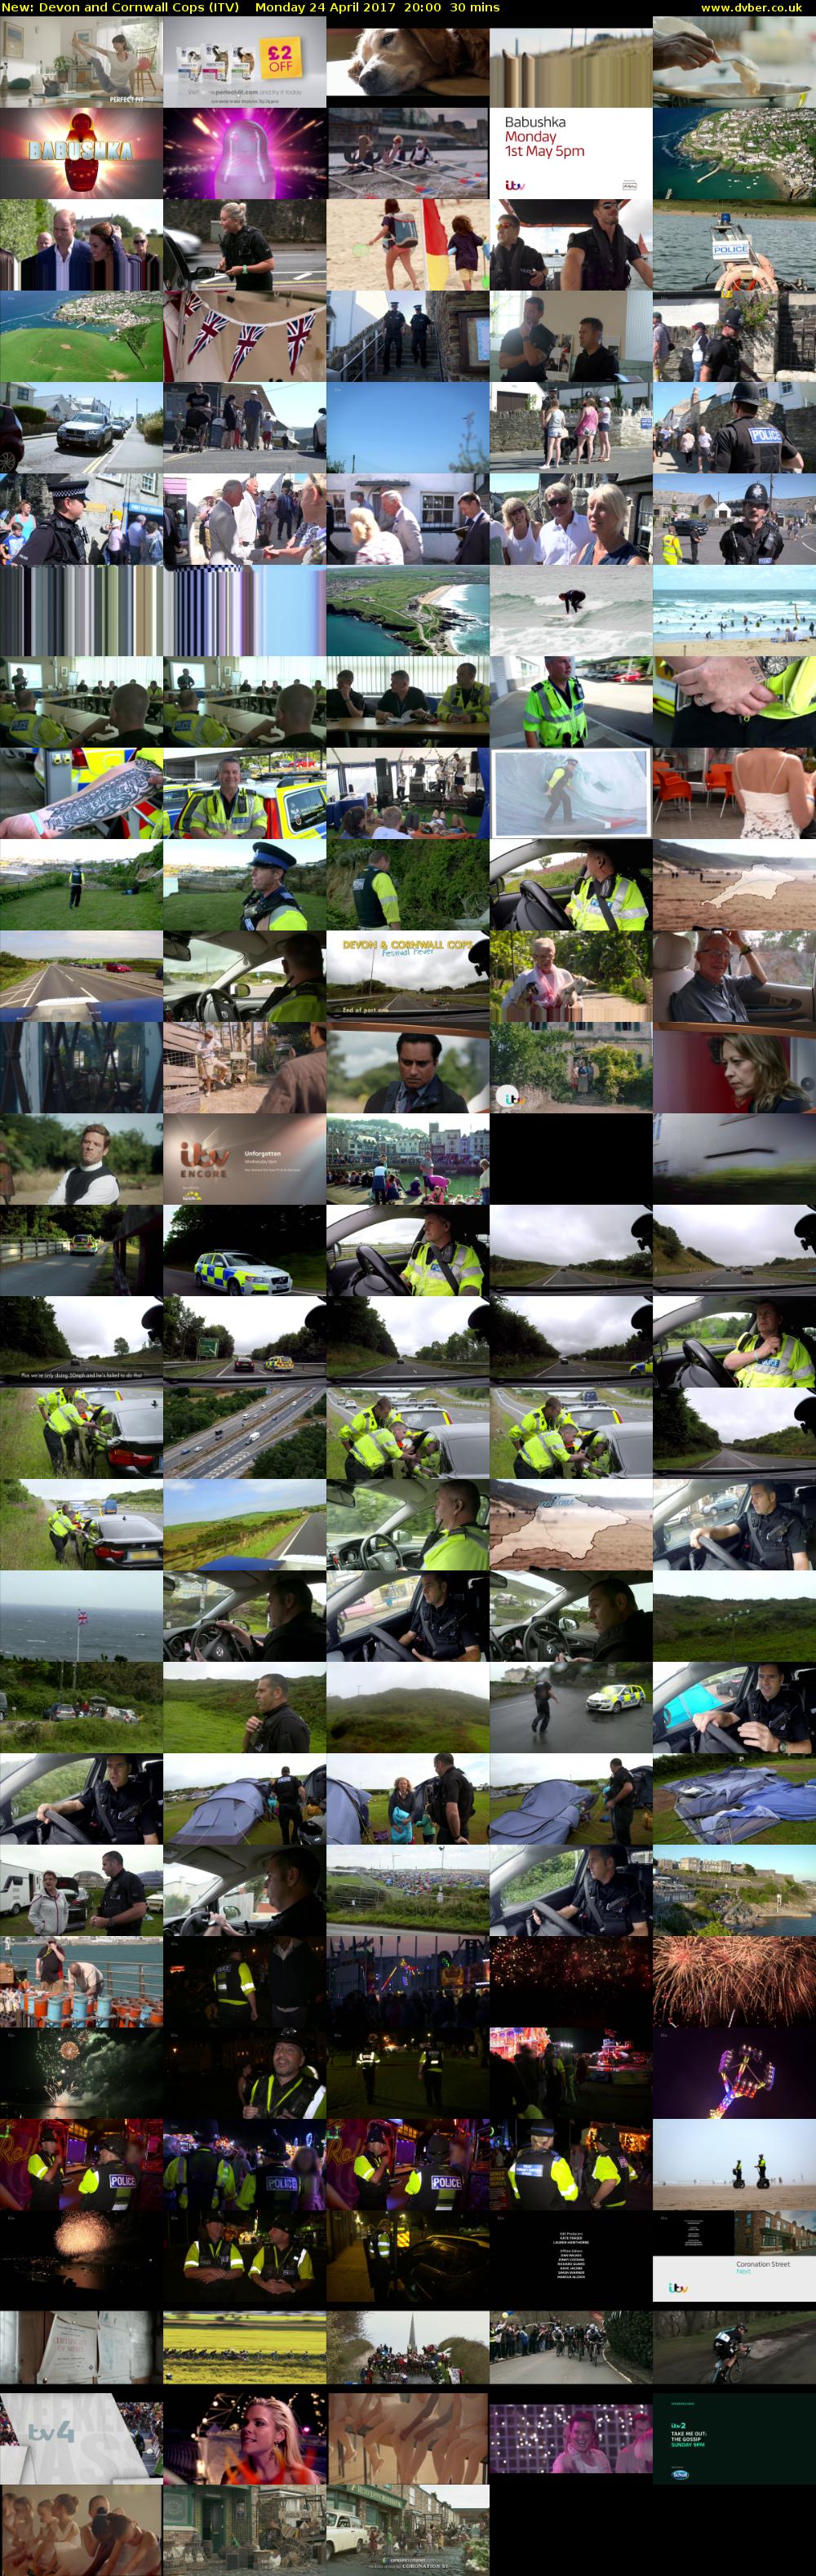 Devon and Cornwall Cops (ITV) Monday 24 April 2017 20:00 - 20:30